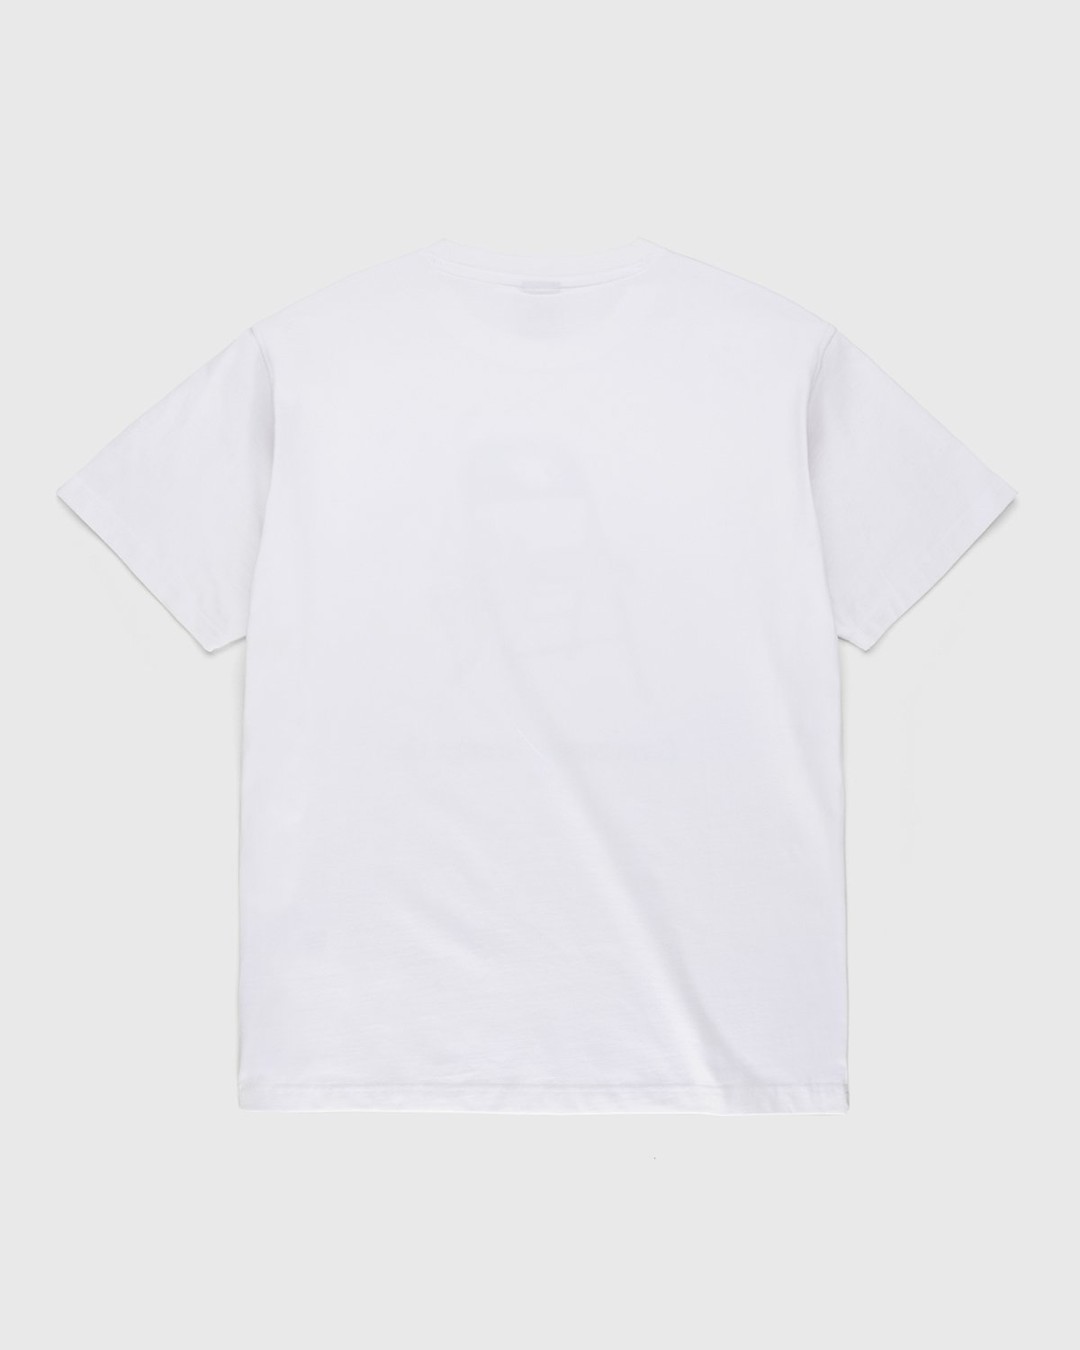 New Balance – Conversations Amongst Us Heavyweight T-Shirt White - T-shirts - White - Image 2